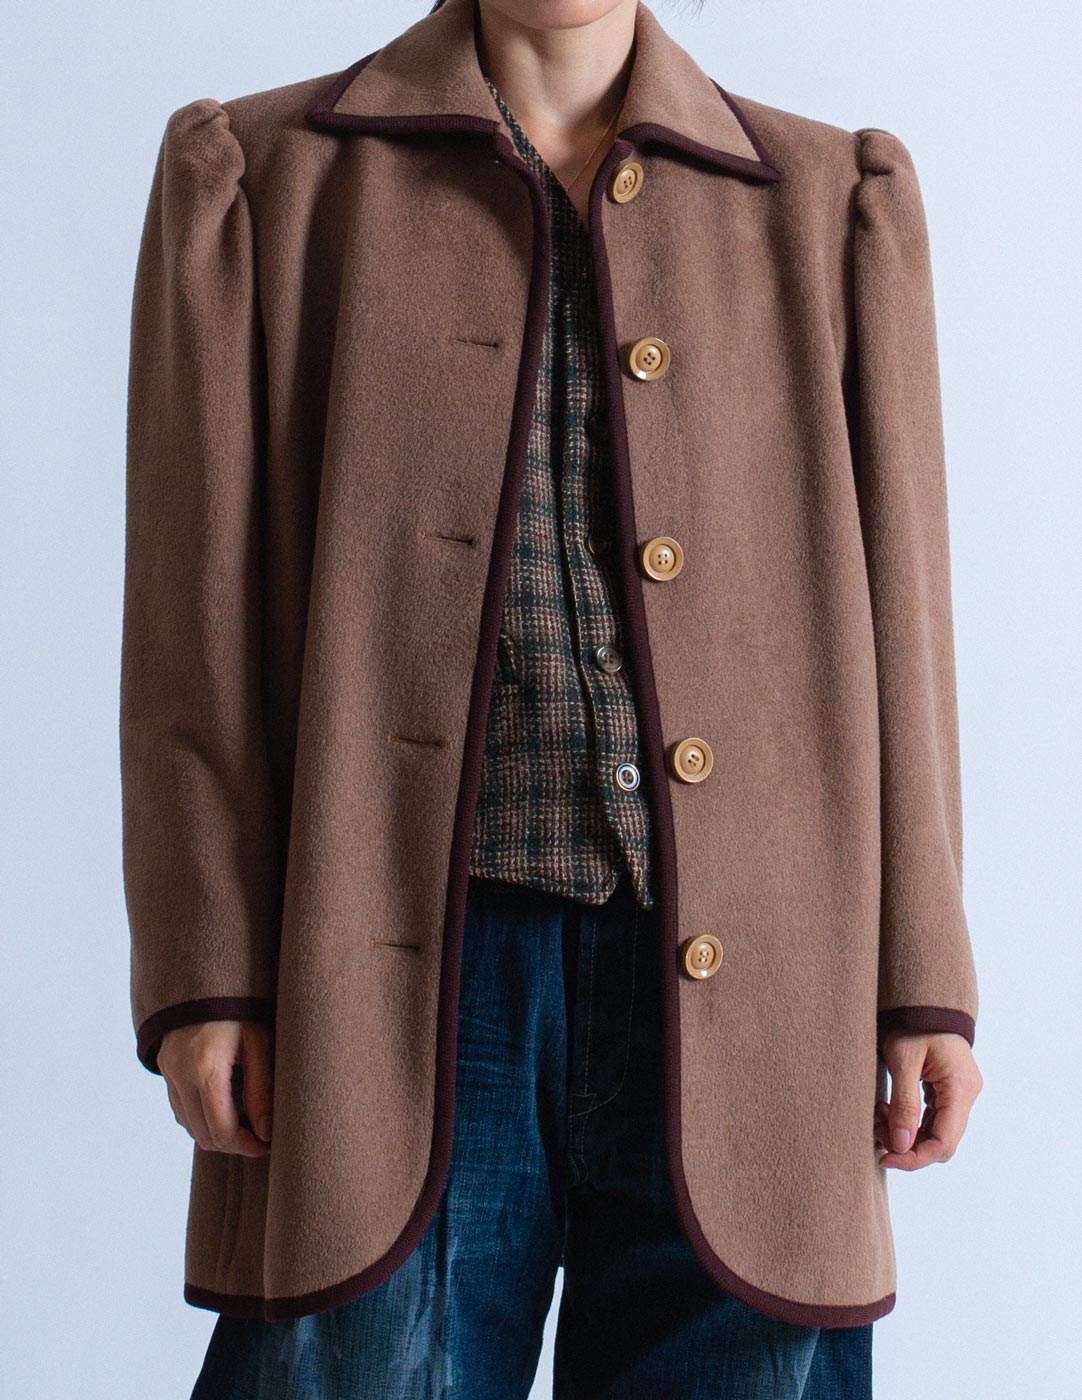 Yves Saint Laurent vintage smocked wool coat detail